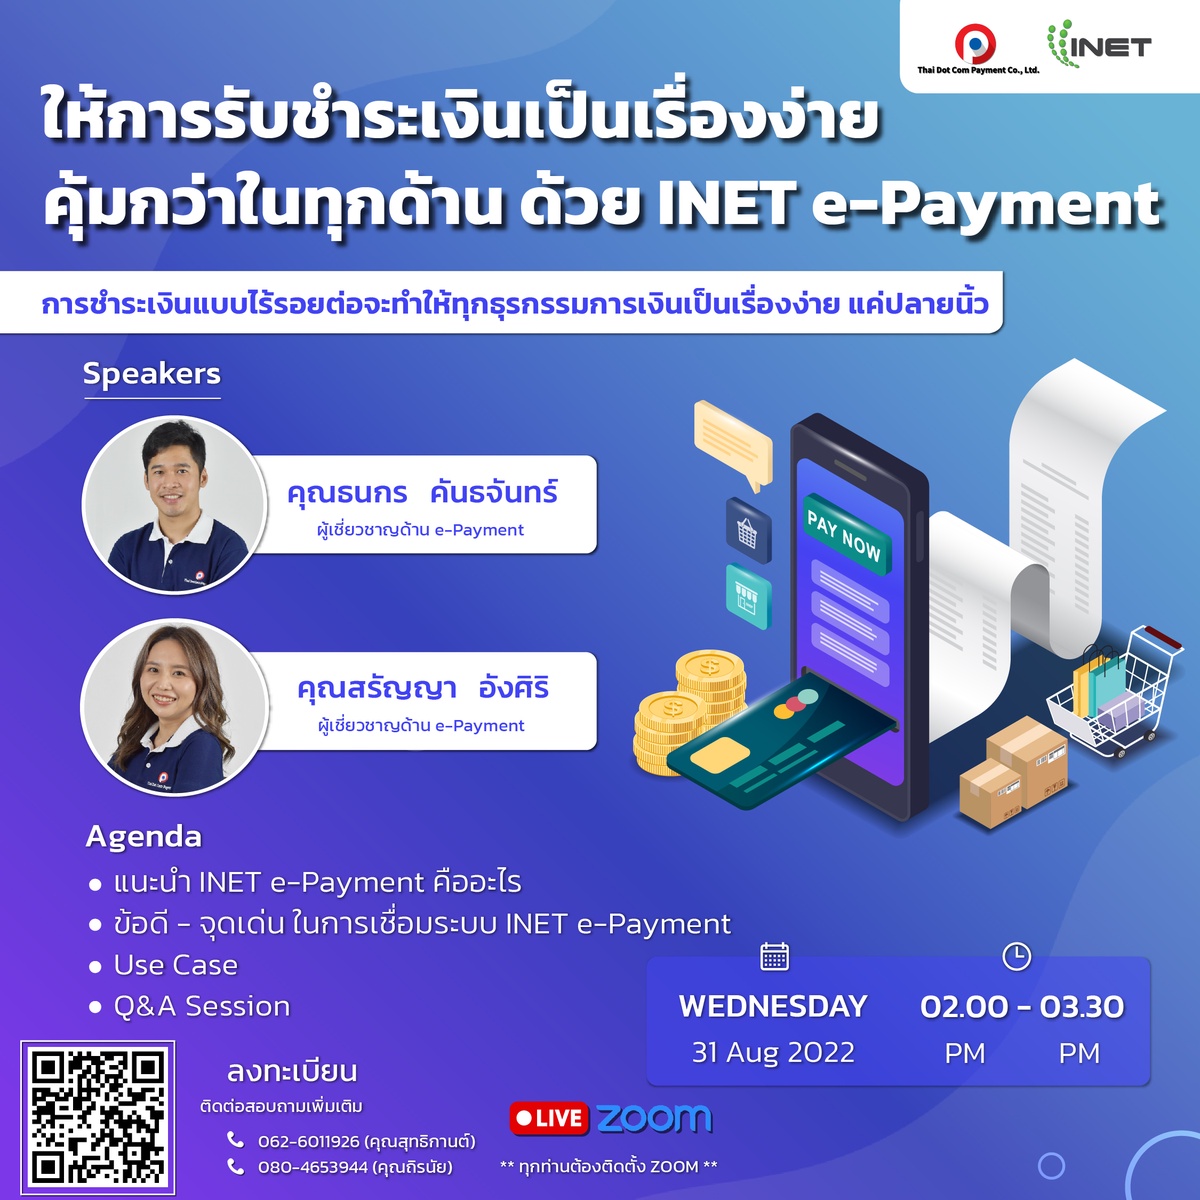 งานสัมมนาออนไลน์ ฟรี! หัวข้อ ให้การรับชำระเงินเป็นเรื่องง่าย คุ้มกว่าในทุกด้าน ด้วย INET e-Payment